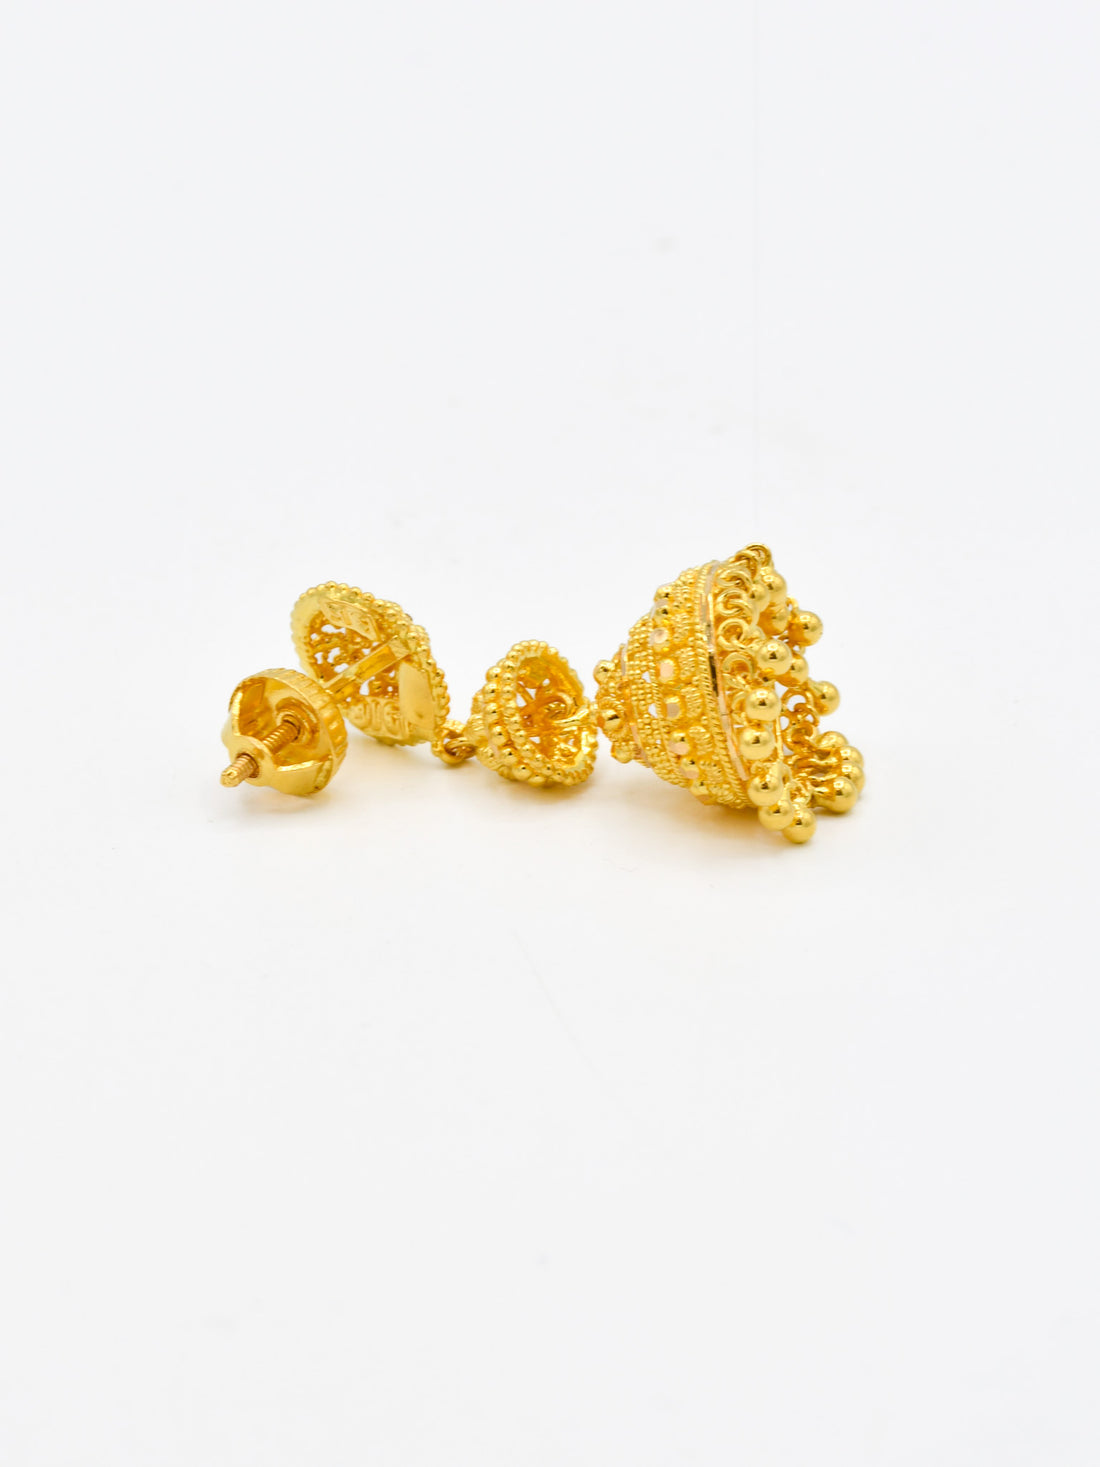 22ct Gold Filigree Jhumki Earrings - Roop Darshan